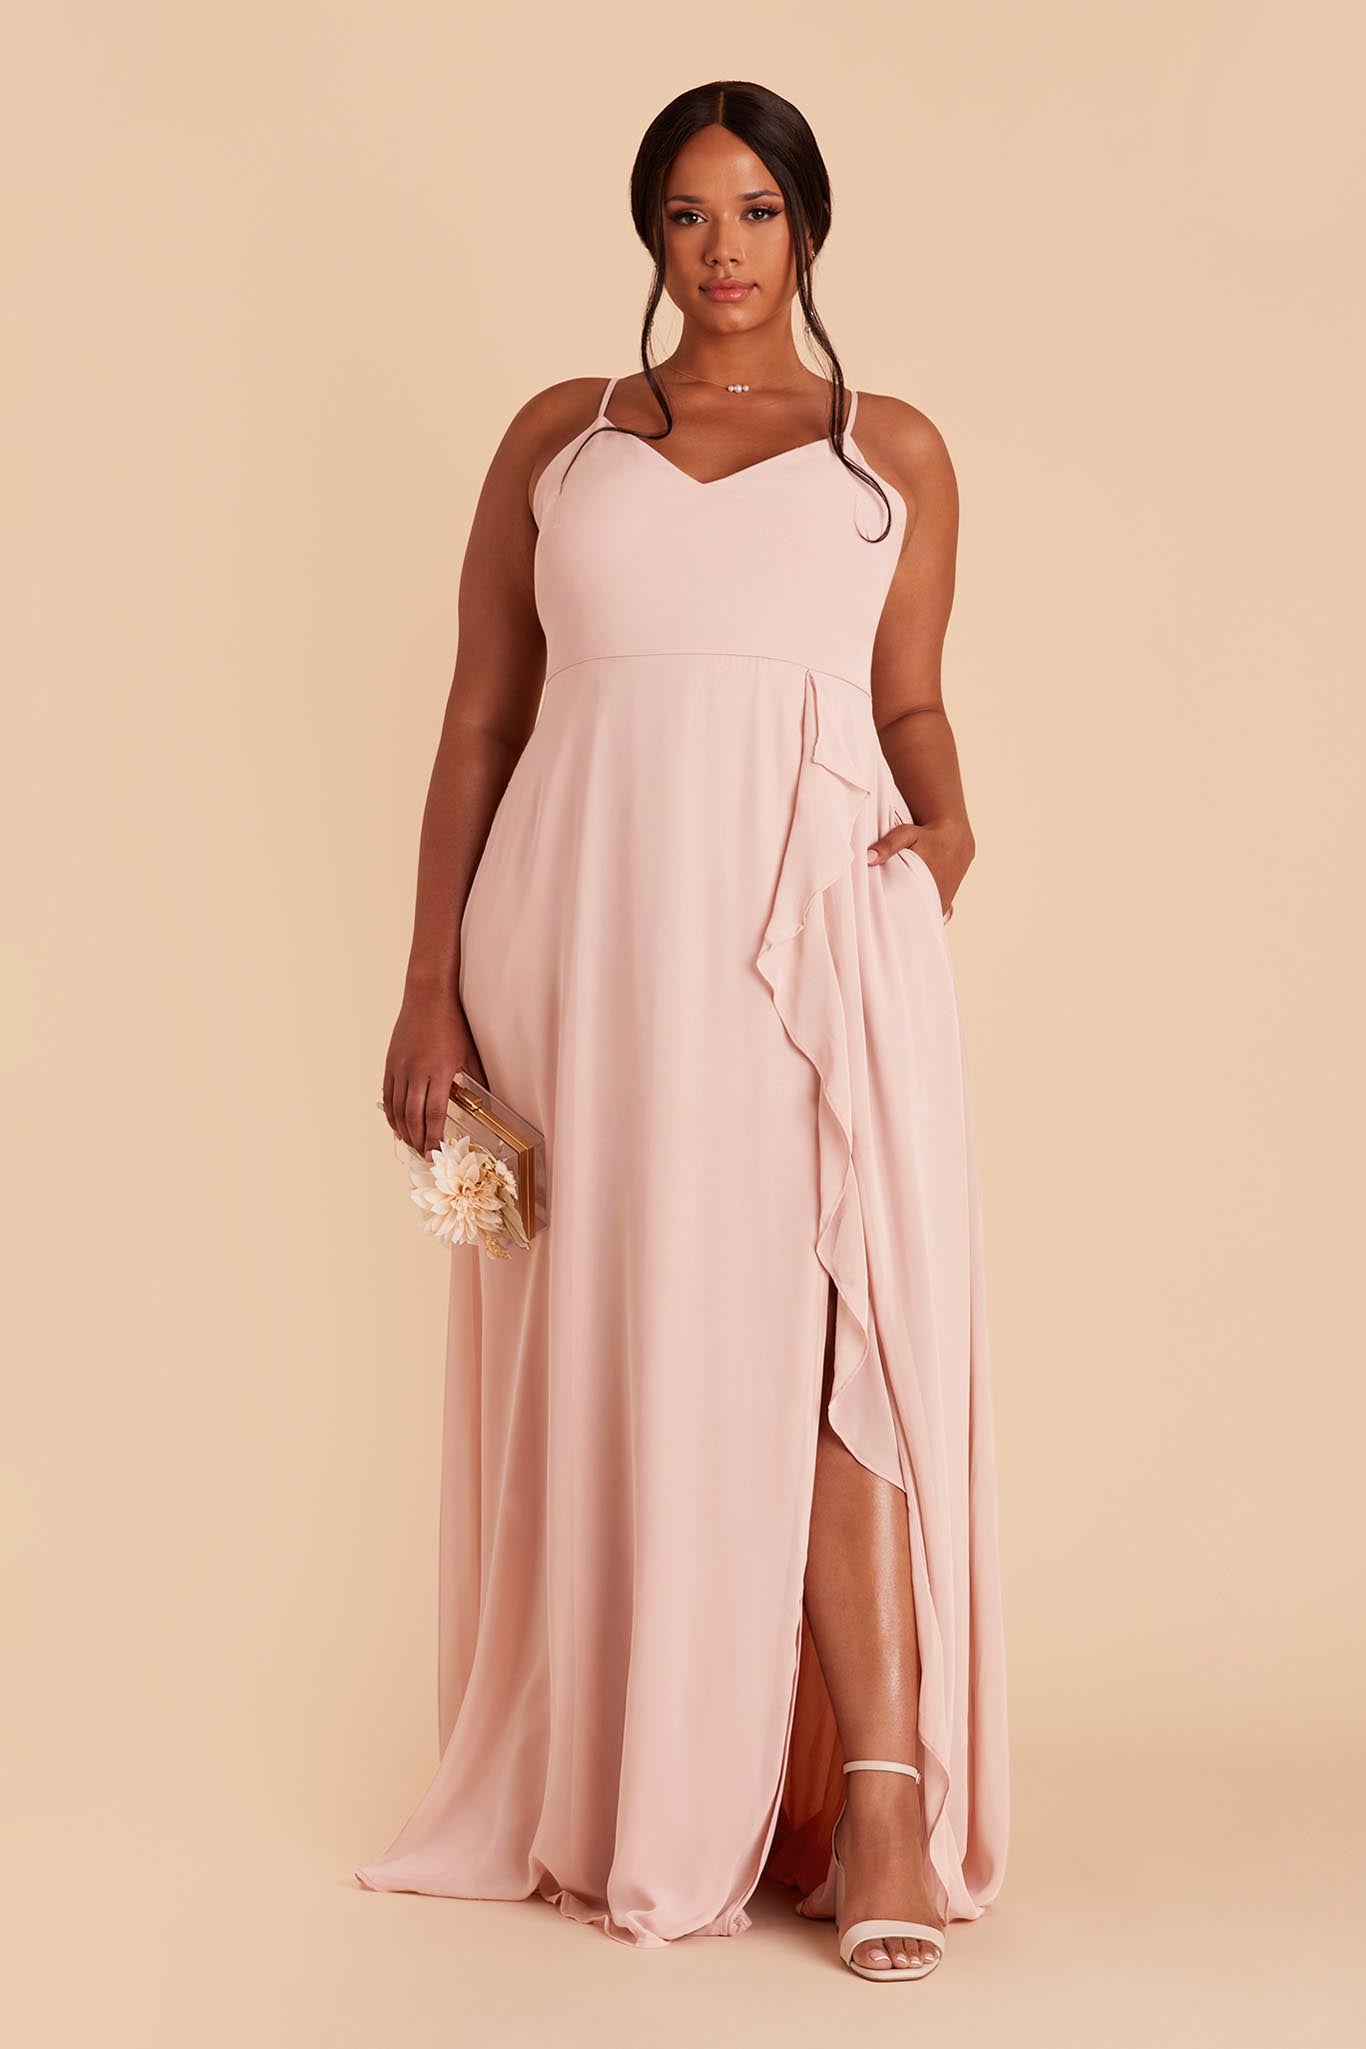 Blush Pink Theresa Chiffon Dress by Birdy Grey